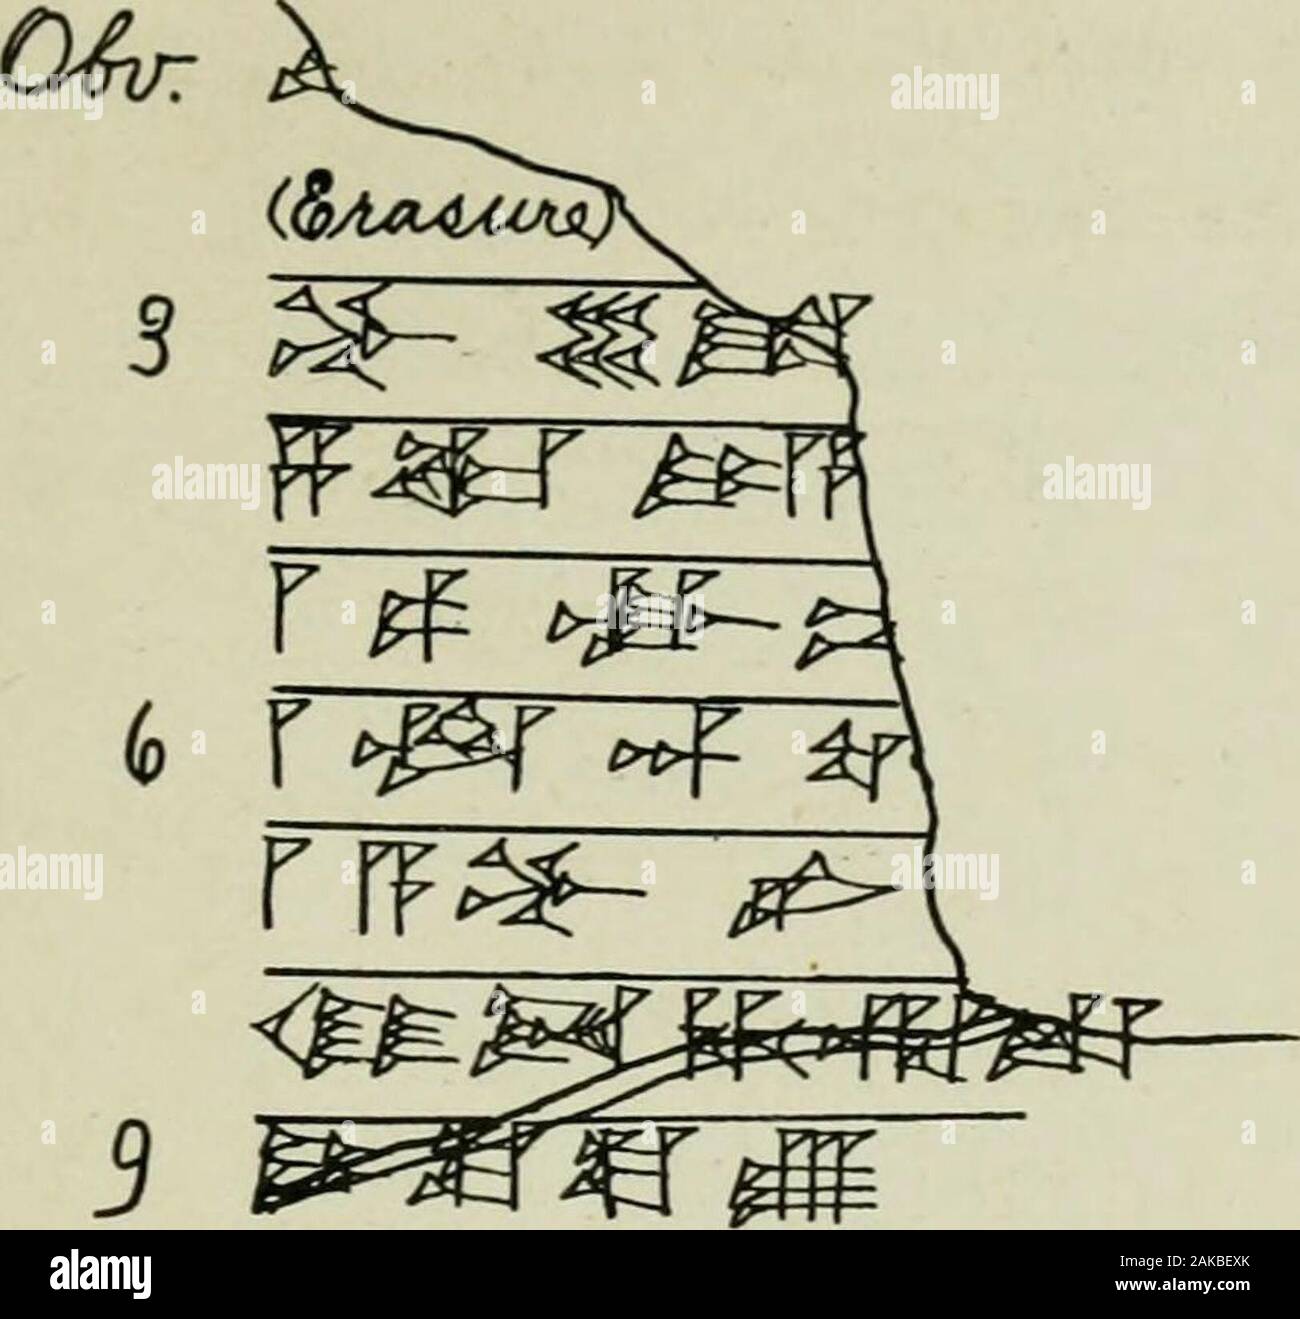 Documenti aziendali del periodo Hammurapi, dal British Museum . CUU/0Lf4 H/&GT;^^ ^^ L SA m&GT;^&GT;^ r ^^^&GT;^^^^^jF^ (^ ^s^^^^^m^^^ J &lt;- ^im^^^ ^^c^Mf O^dt^aHf ry/ULvr/y&lt;2x^ Q-^r^fJL testi autografati68 Ba,.3IS-9,US 119. 3 ^^m $oCqZ (Hiyir &LT;F=3^^6MR&LT;^ 8 :^F^ ^ ^^ 5 -^ la. Foto Stock